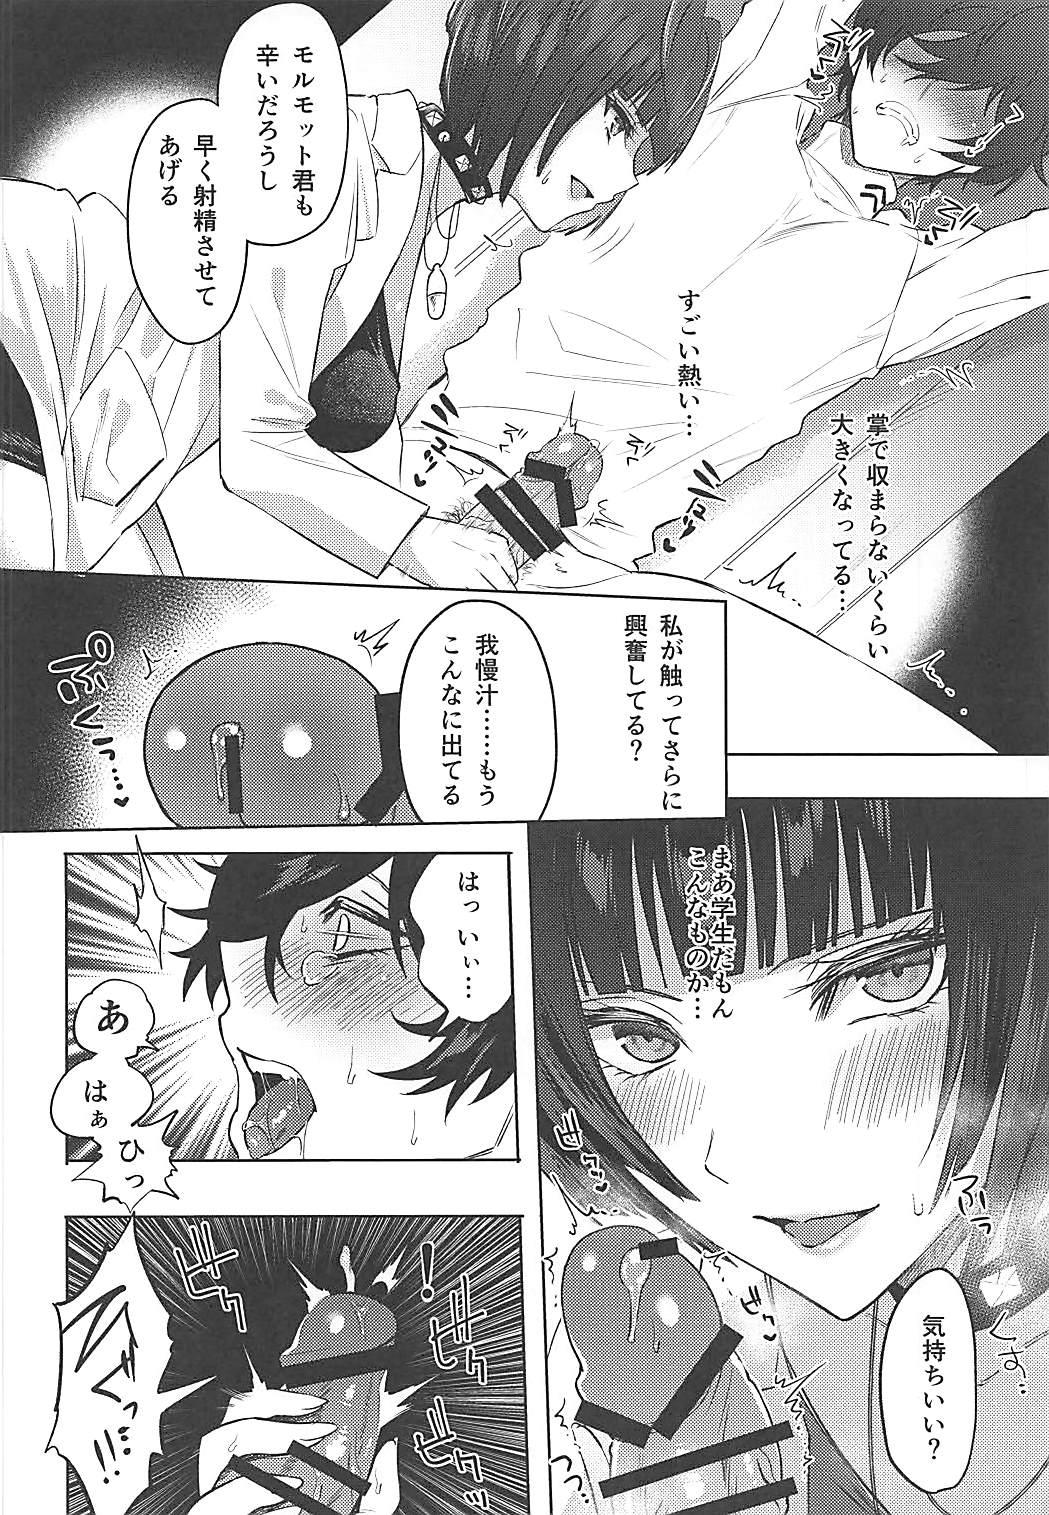 Esposa Kimi wa Watashi no Marmot - Persona 5 Cream - Page 7